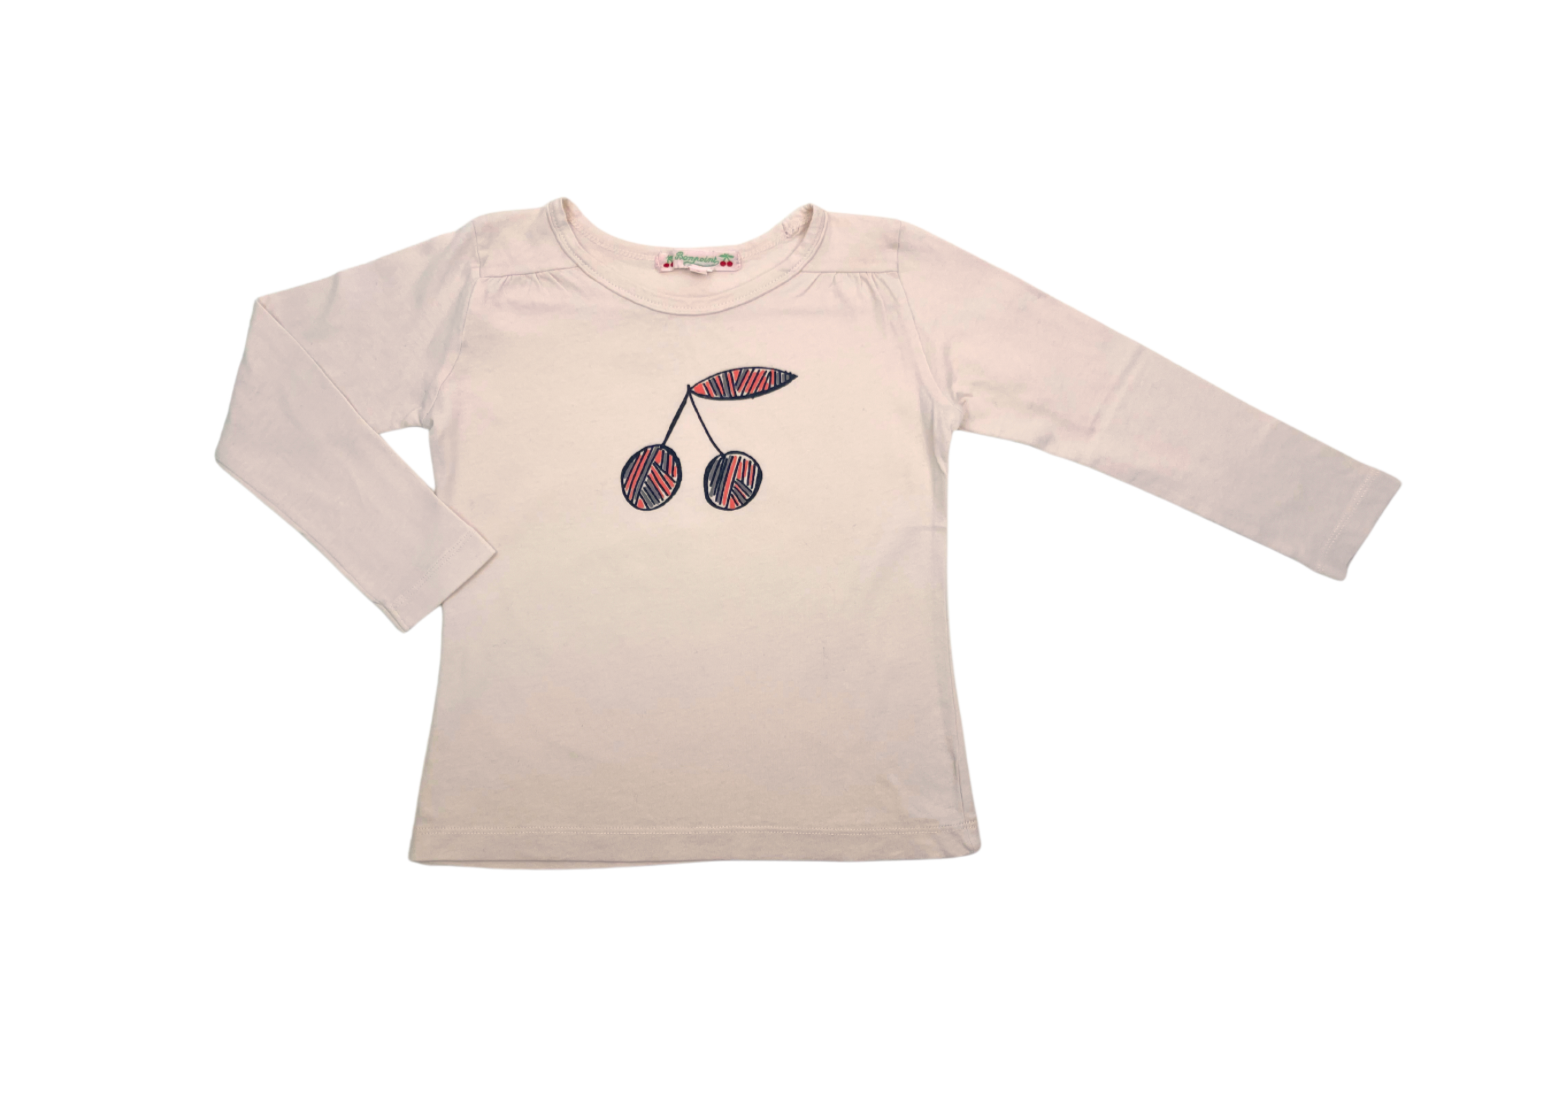 BONPOINT - T-shirt manches longues rose pâle motif cerise - 3 ans